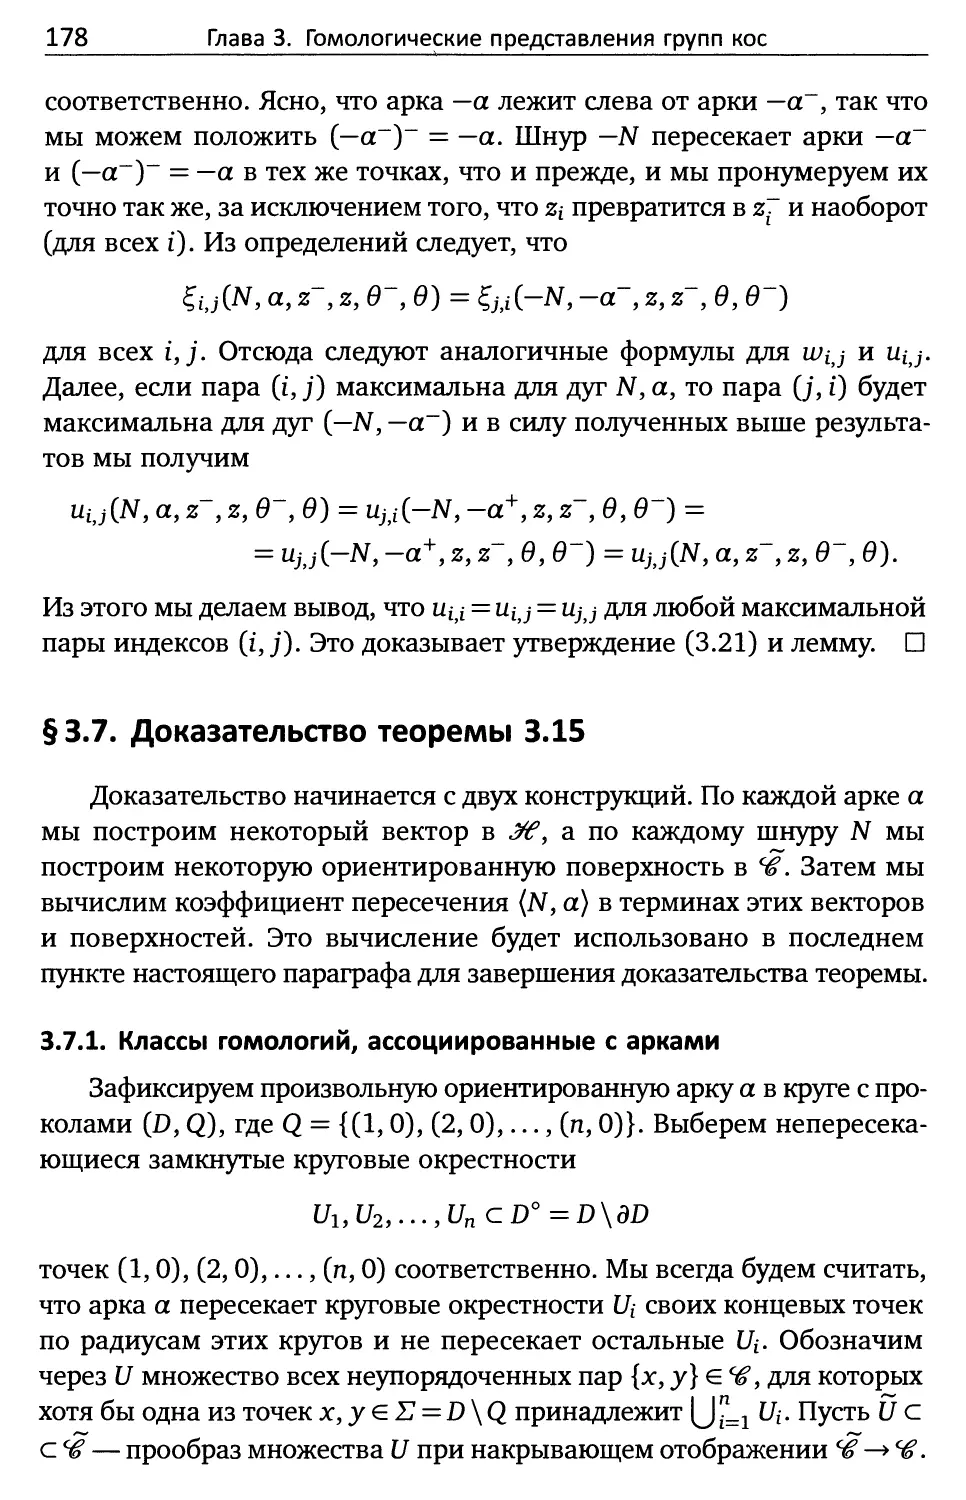 § 3.7. Доказательство теоремы 3.15